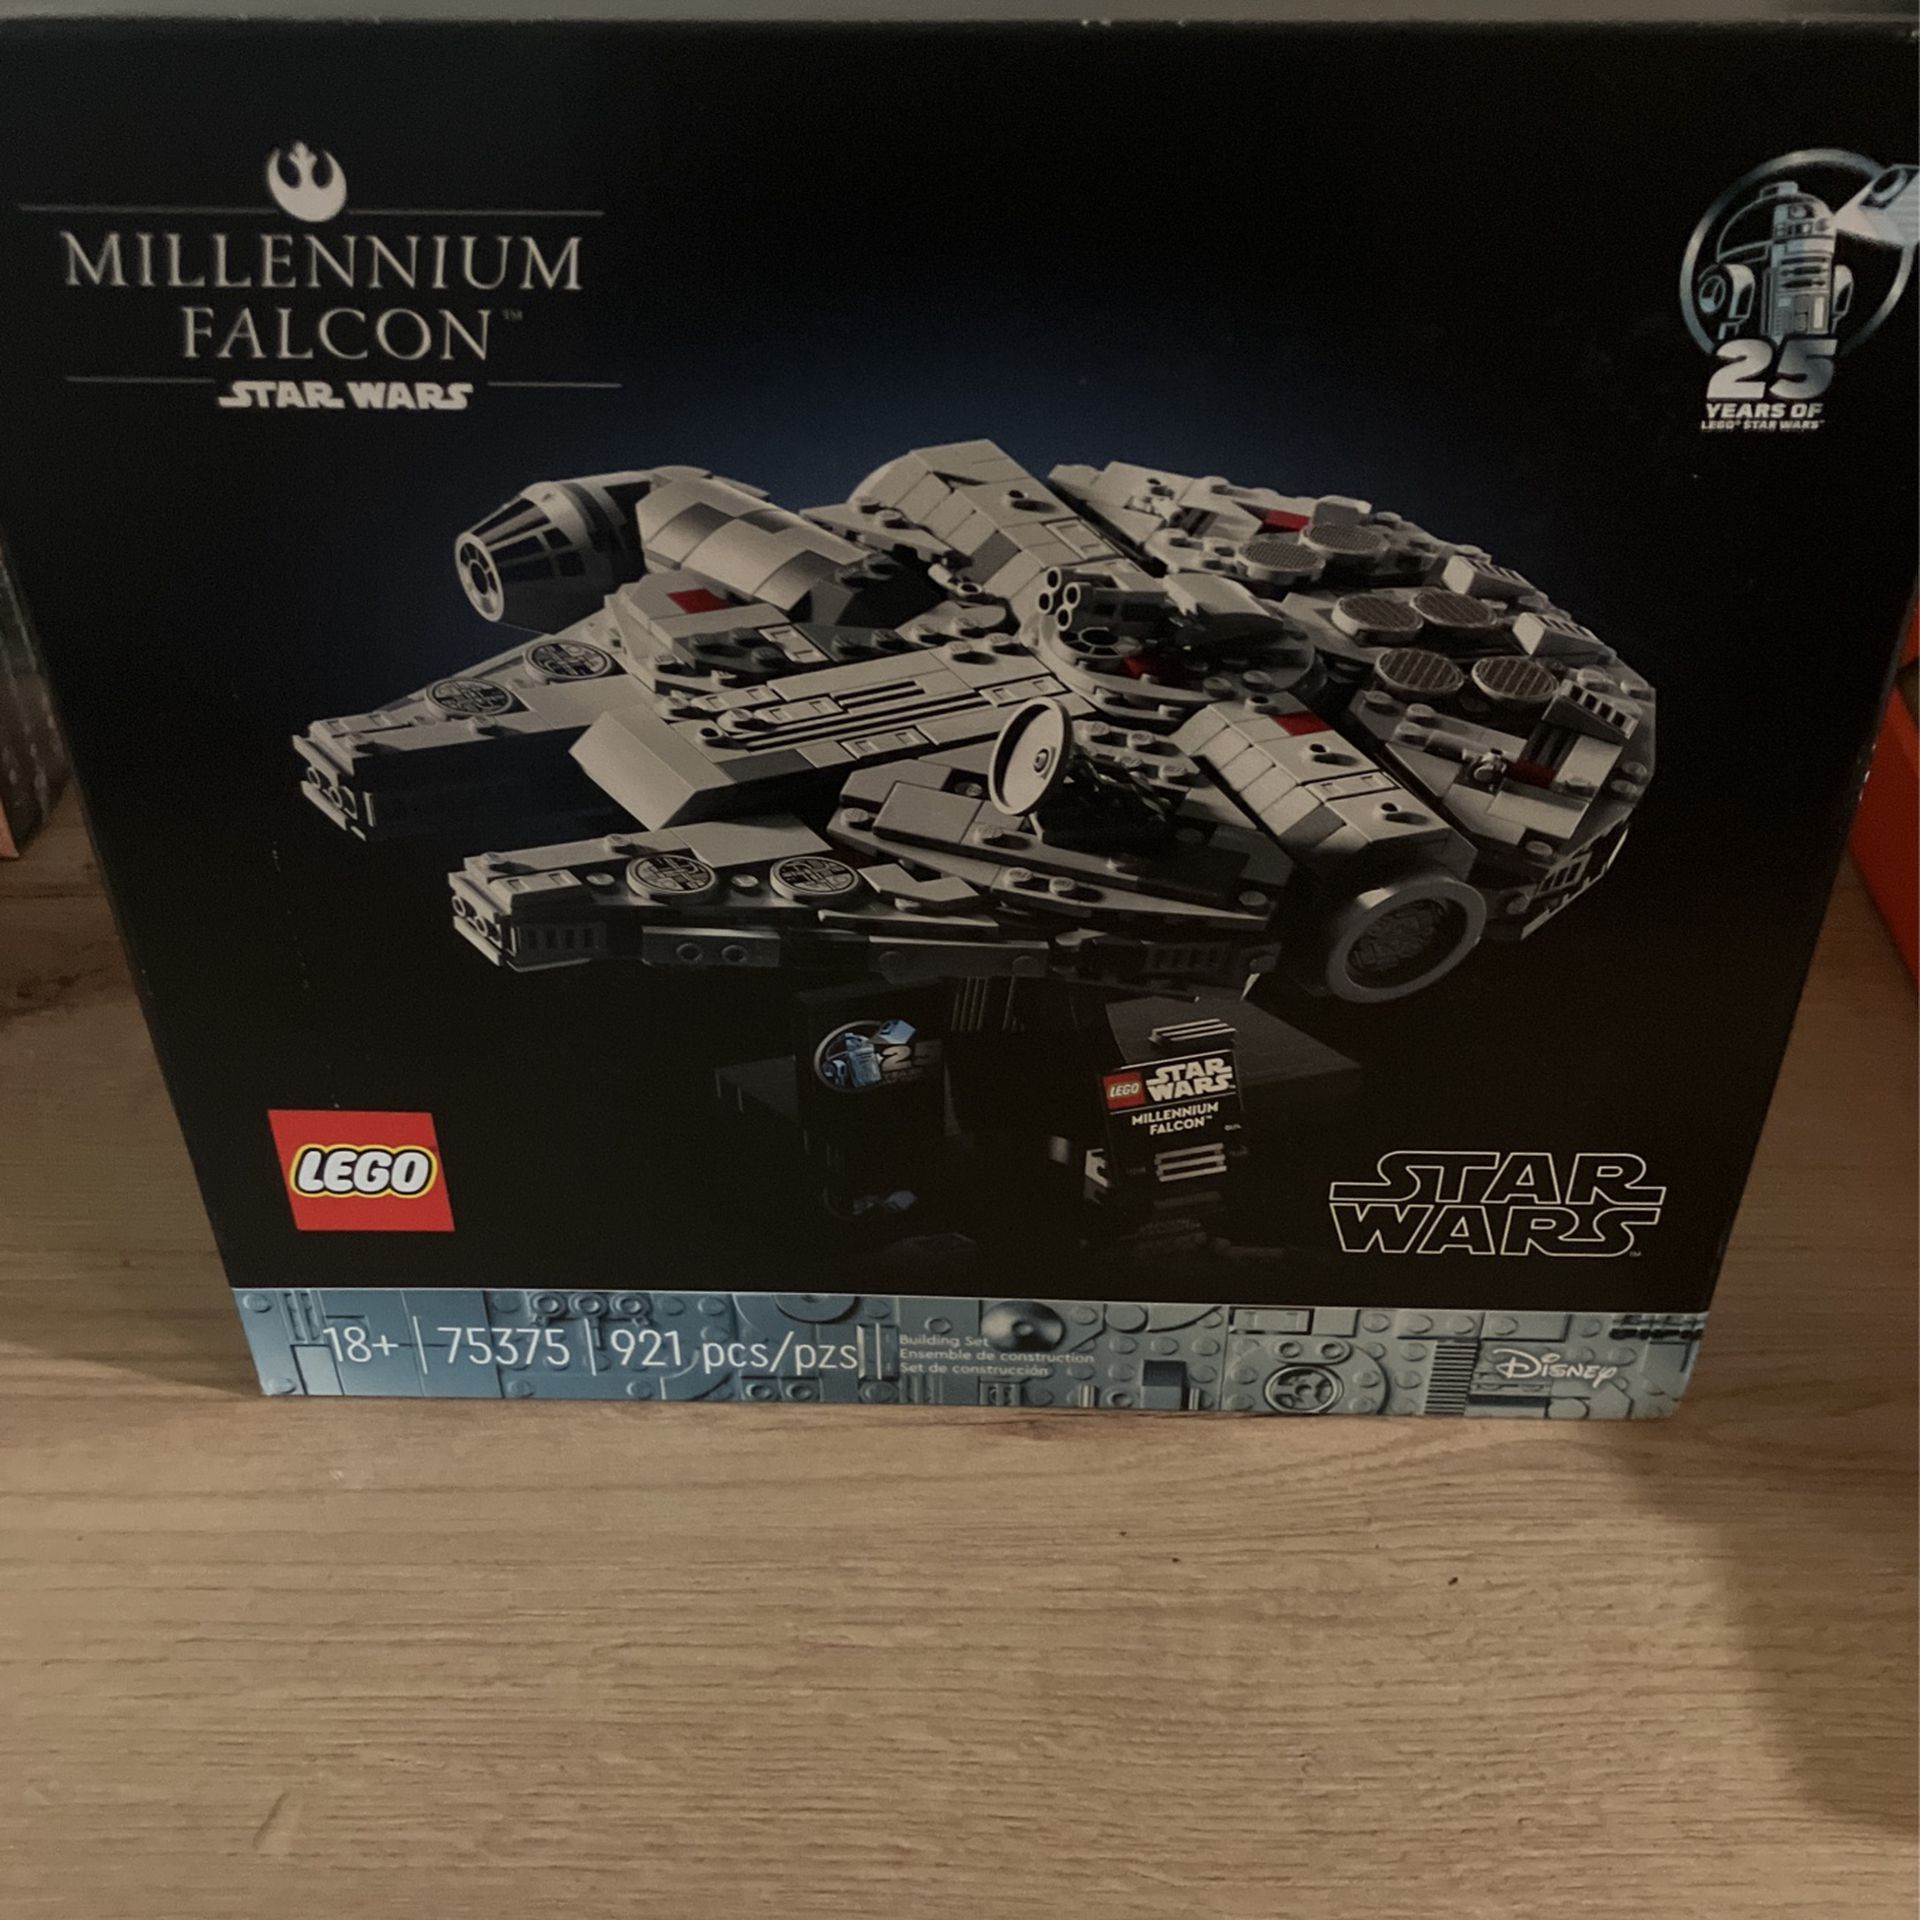 Star Wars Lego 